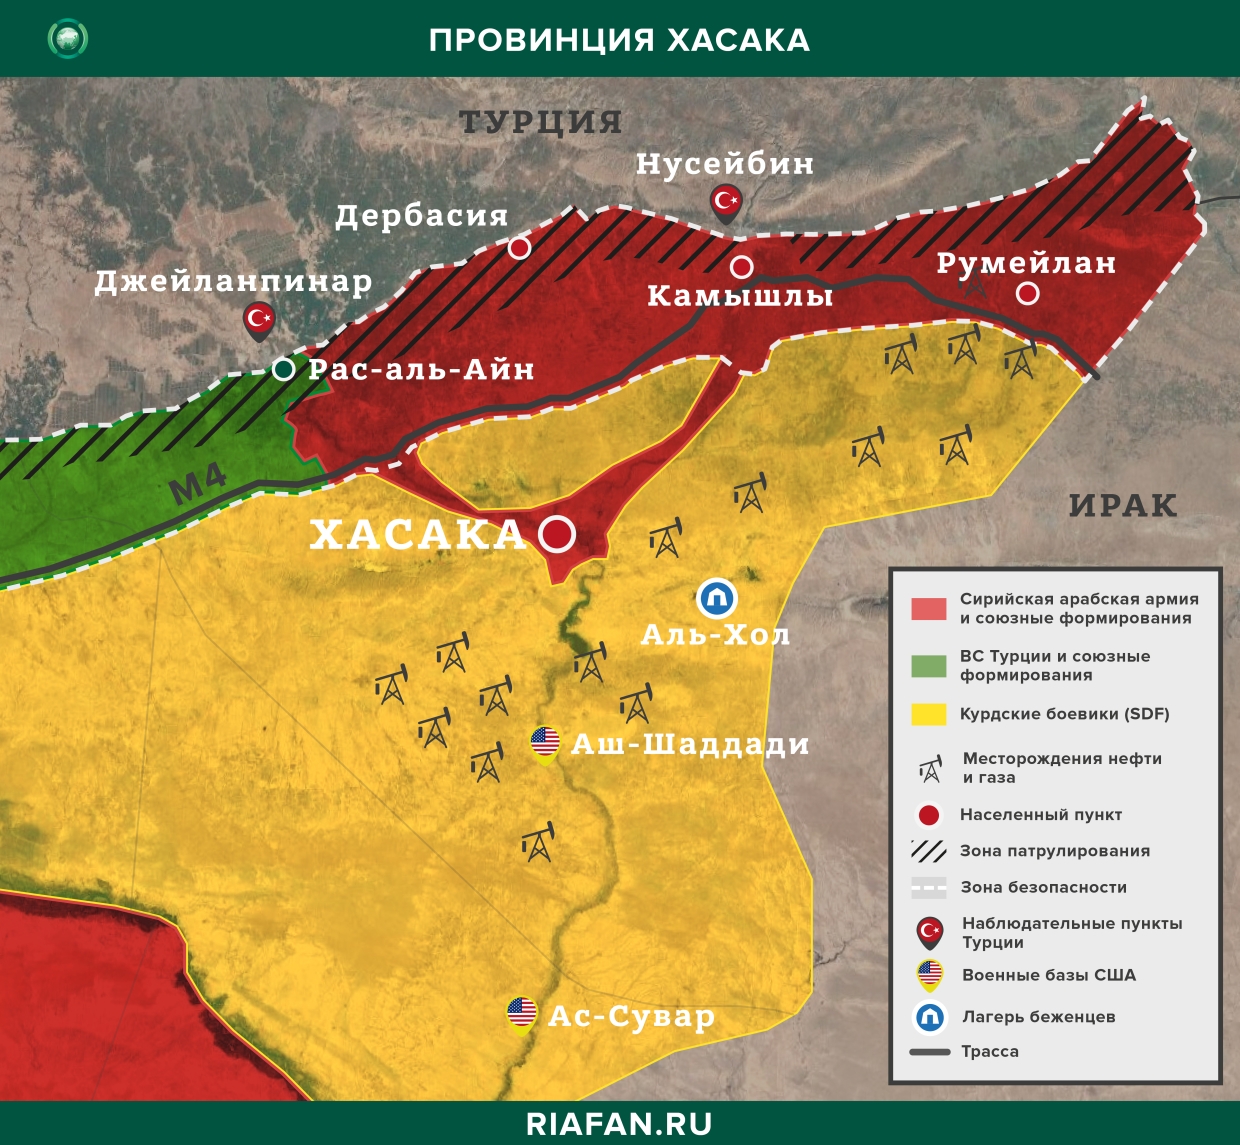 Noticias de Siria 6 Septiembre 16.30: двое турецких военных были ранены в Идлибе